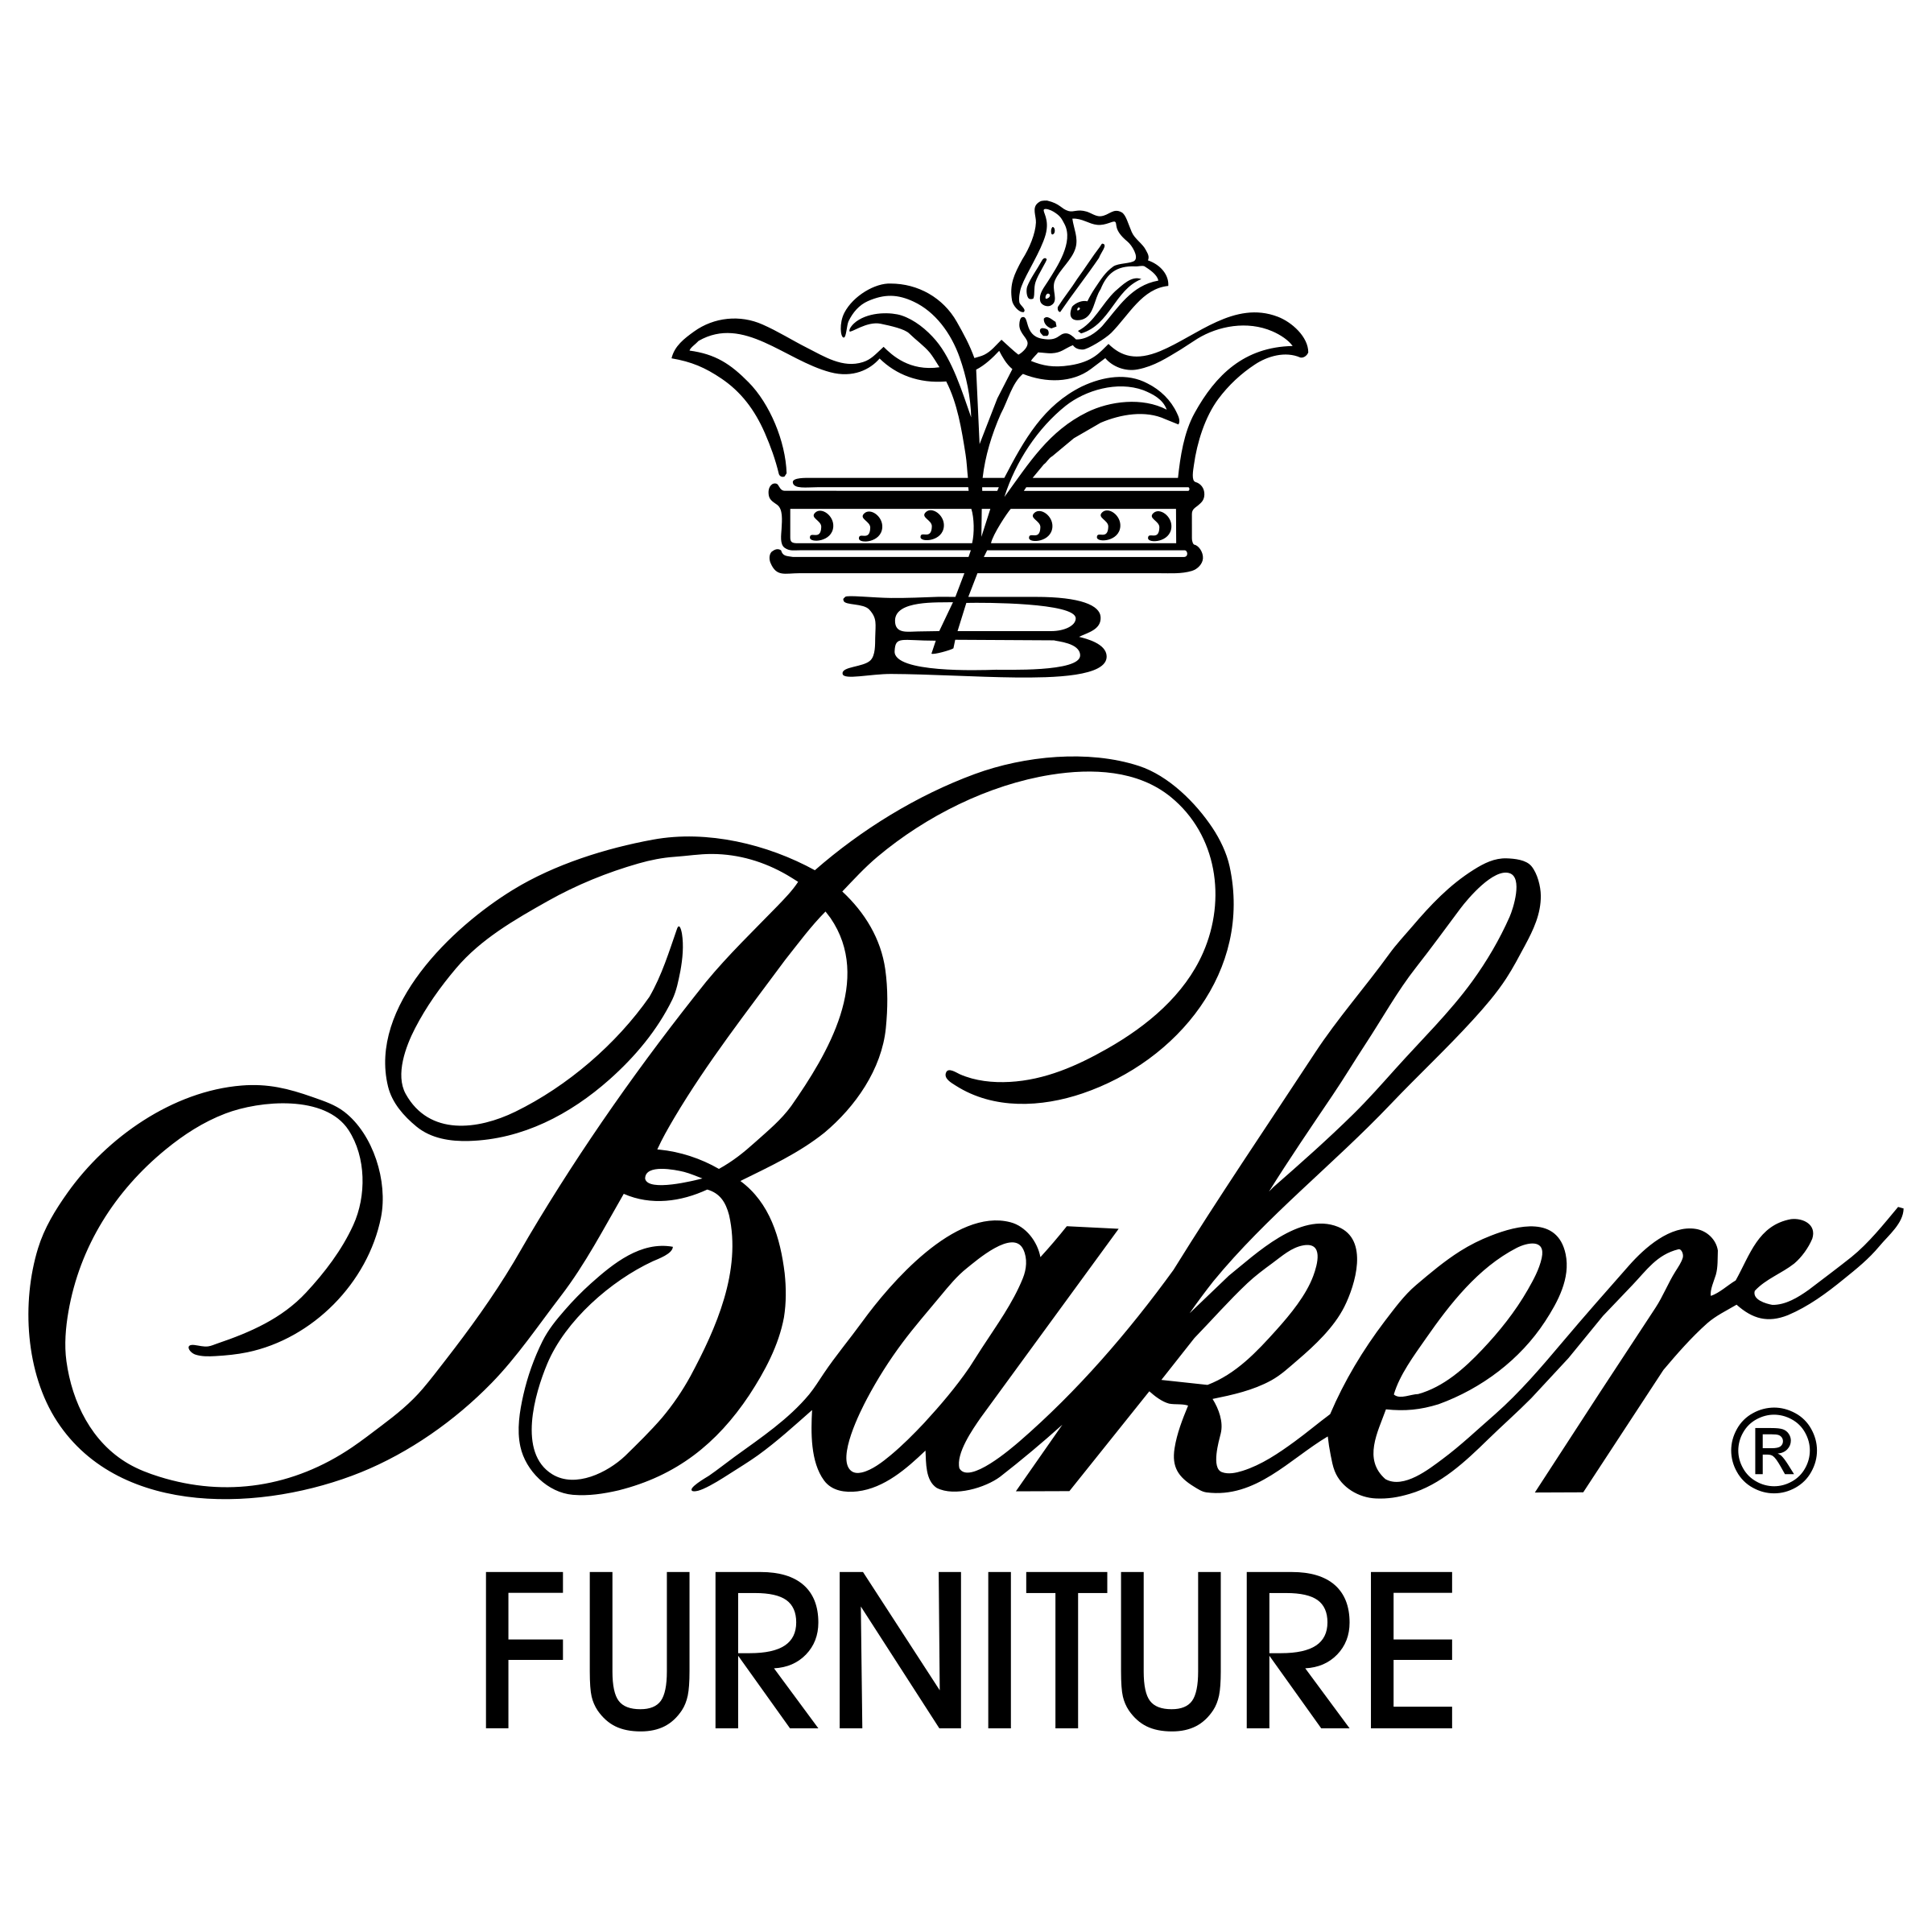 The Baker Logo - Baker Logo PNG Transparent & SVG Vector - Freebie Supply